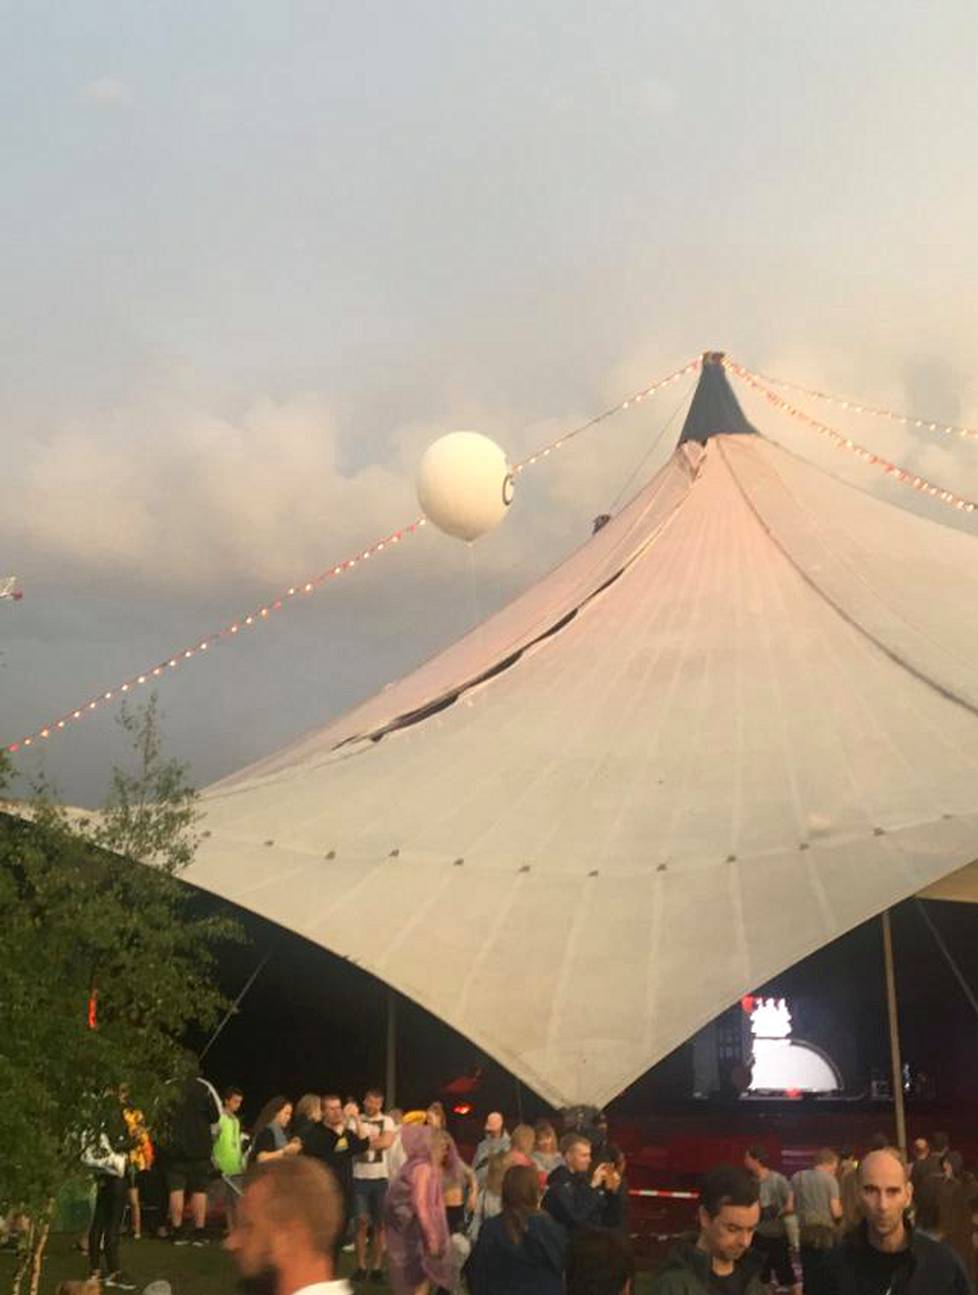 Suvilahdessa pidettävän Flow-festivaalin suureen telttaan tuli reikä kattoon.